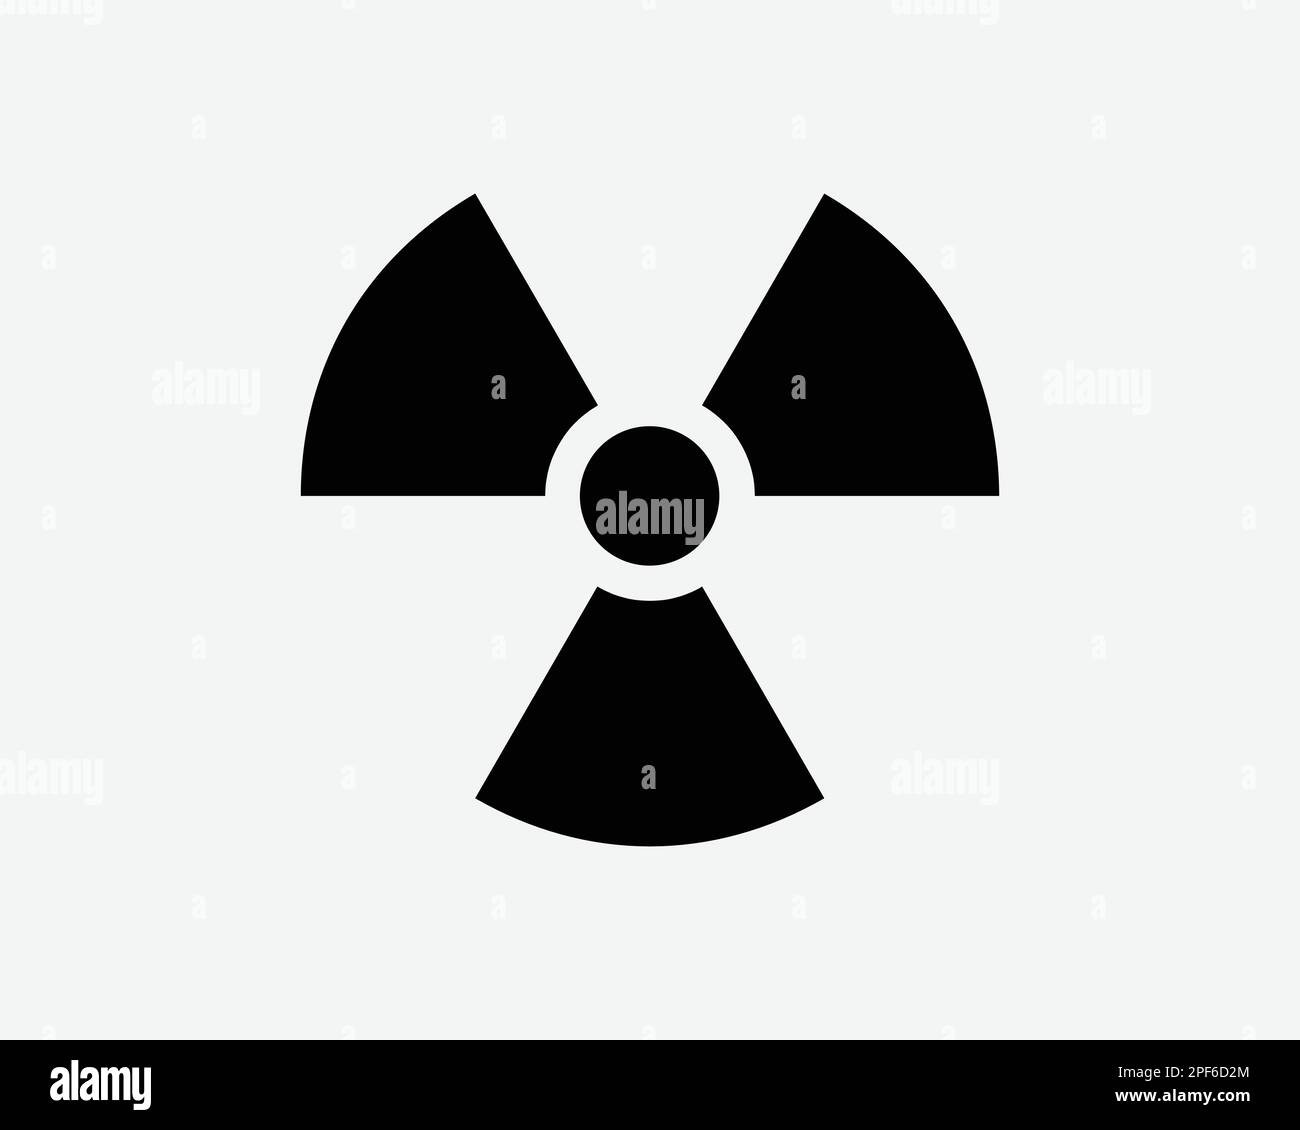 Simbolo di radiazione attenzione pericolo di sicurezza contaminazione radioattiva icona Vector Black White Silhouette Sign Graphic Clipart Illustration Illustration Pictogra Illustrazione Vettoriale